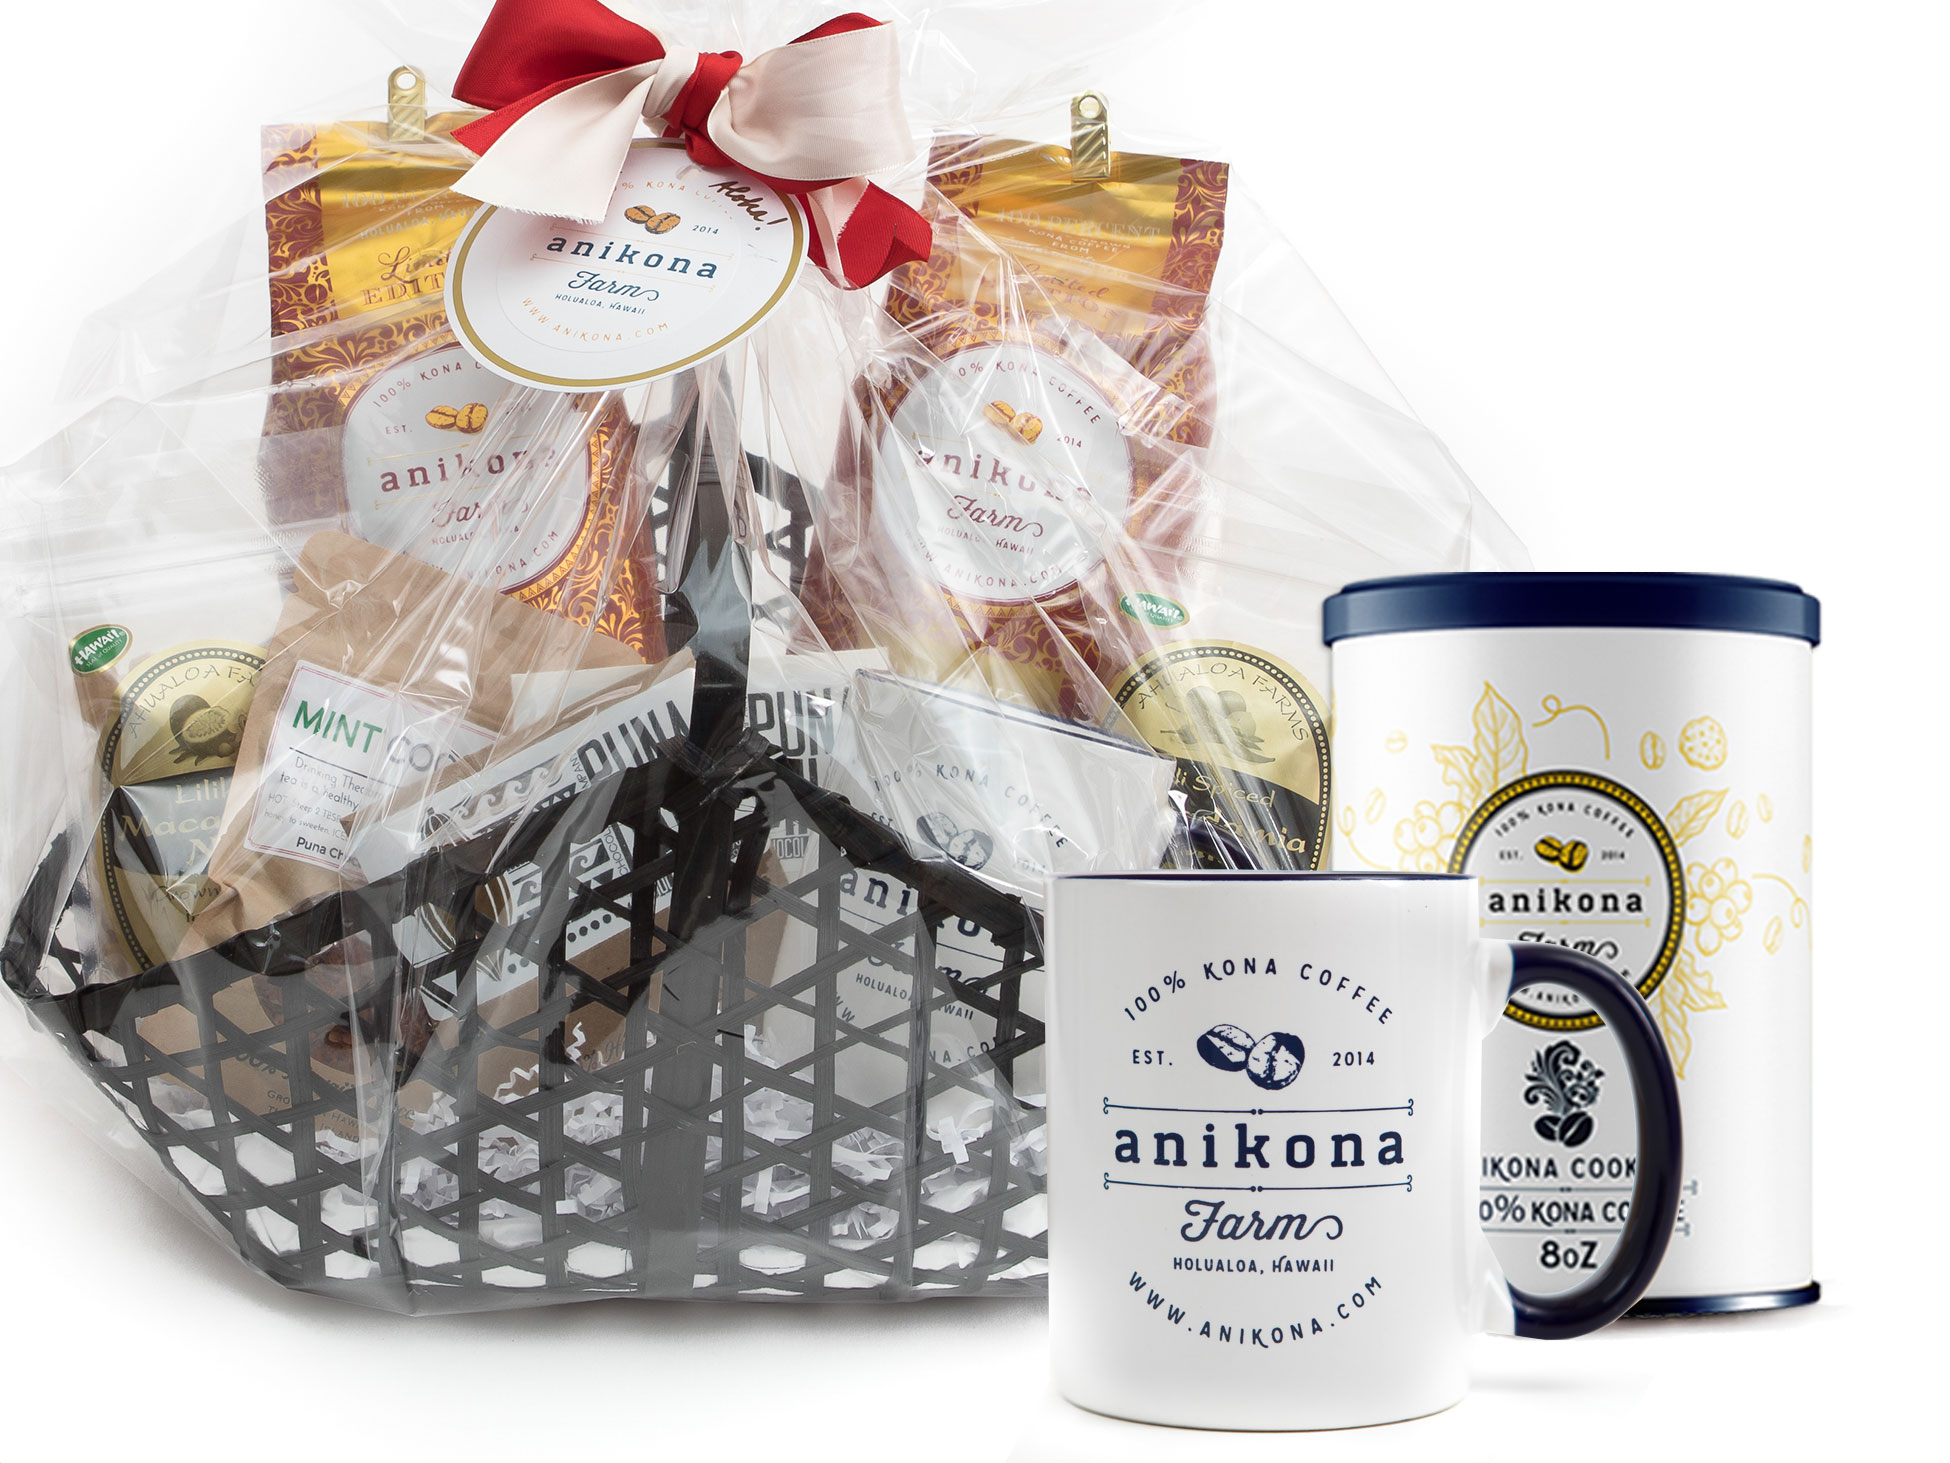 Kona coffee gift baskets sets